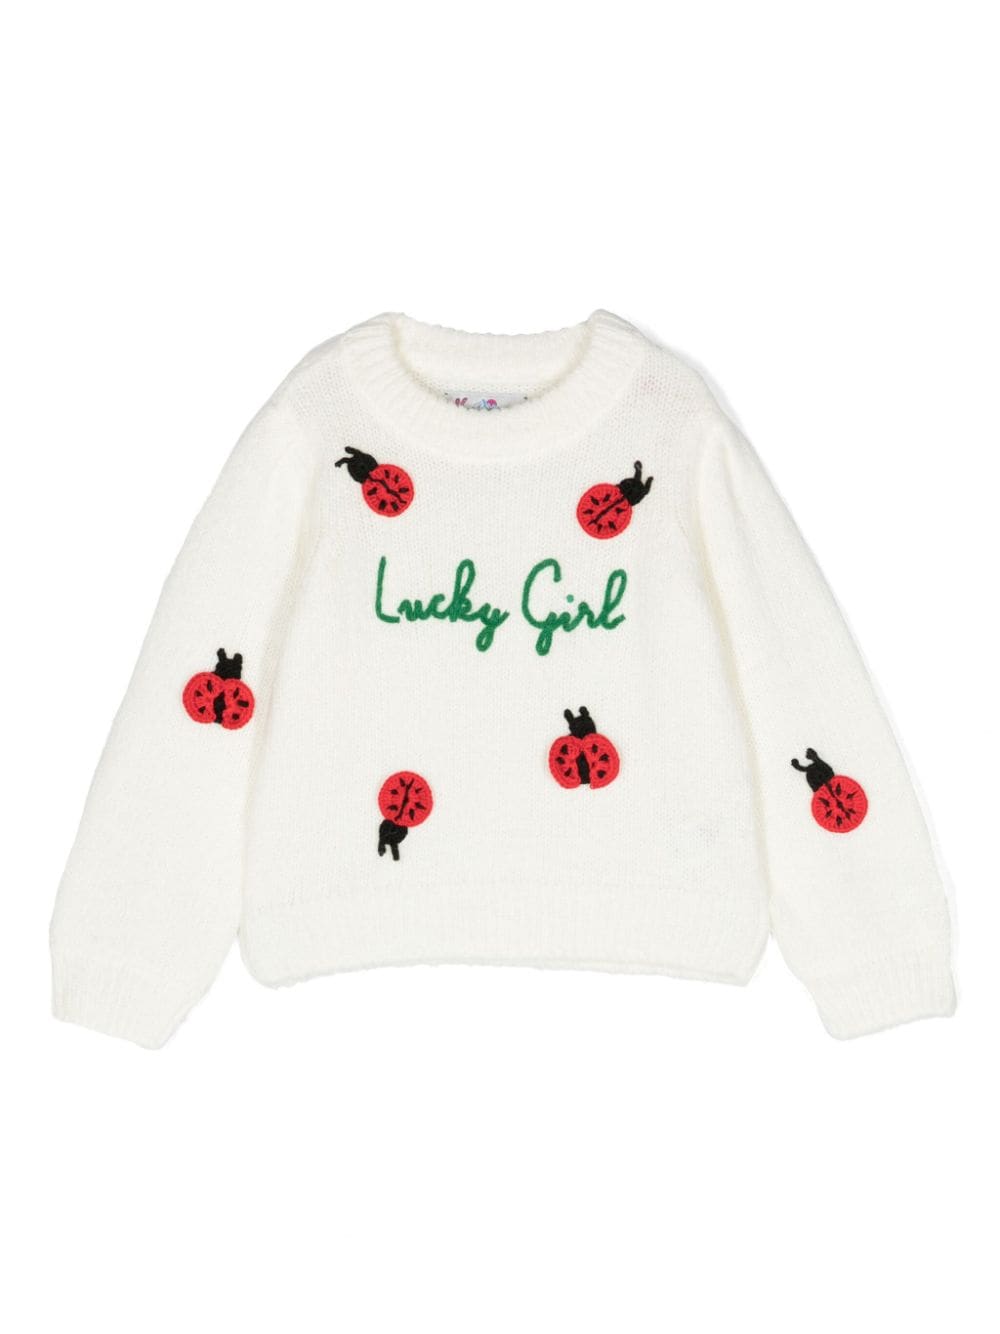 Maglione girocollo Ladybug